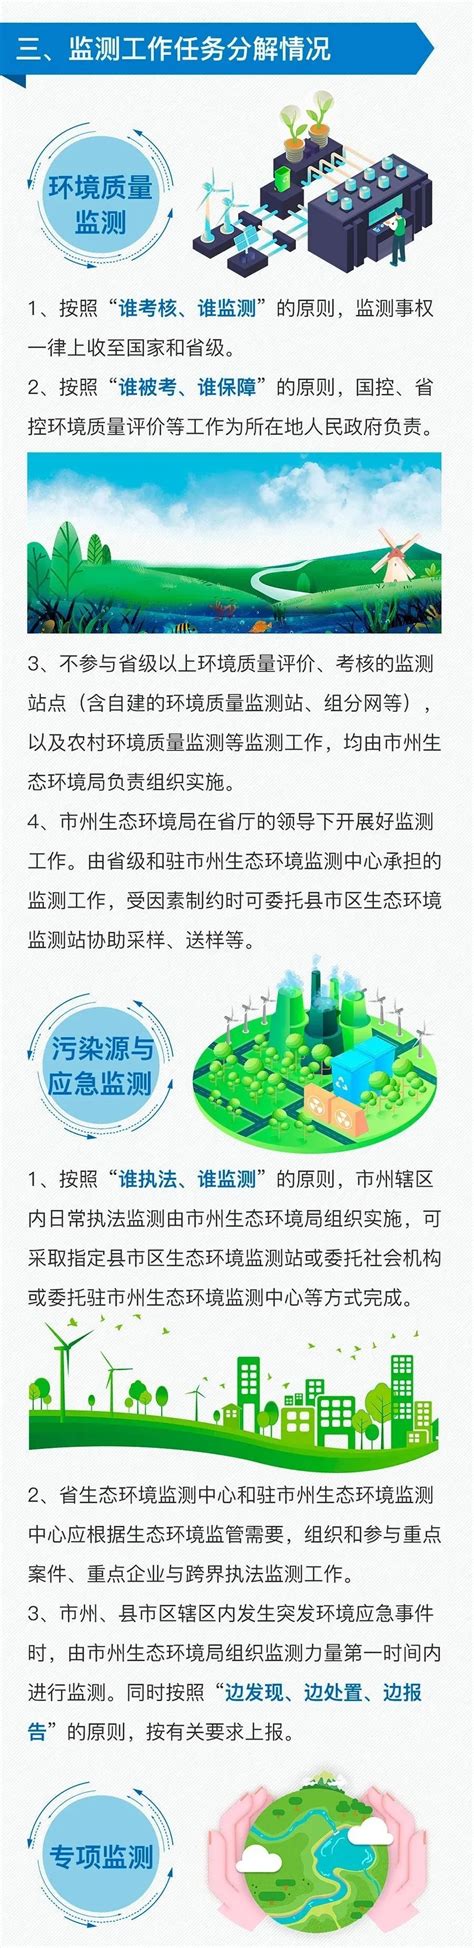 湖南省生态环境垂直管理制度改革见成效-国际环保在线